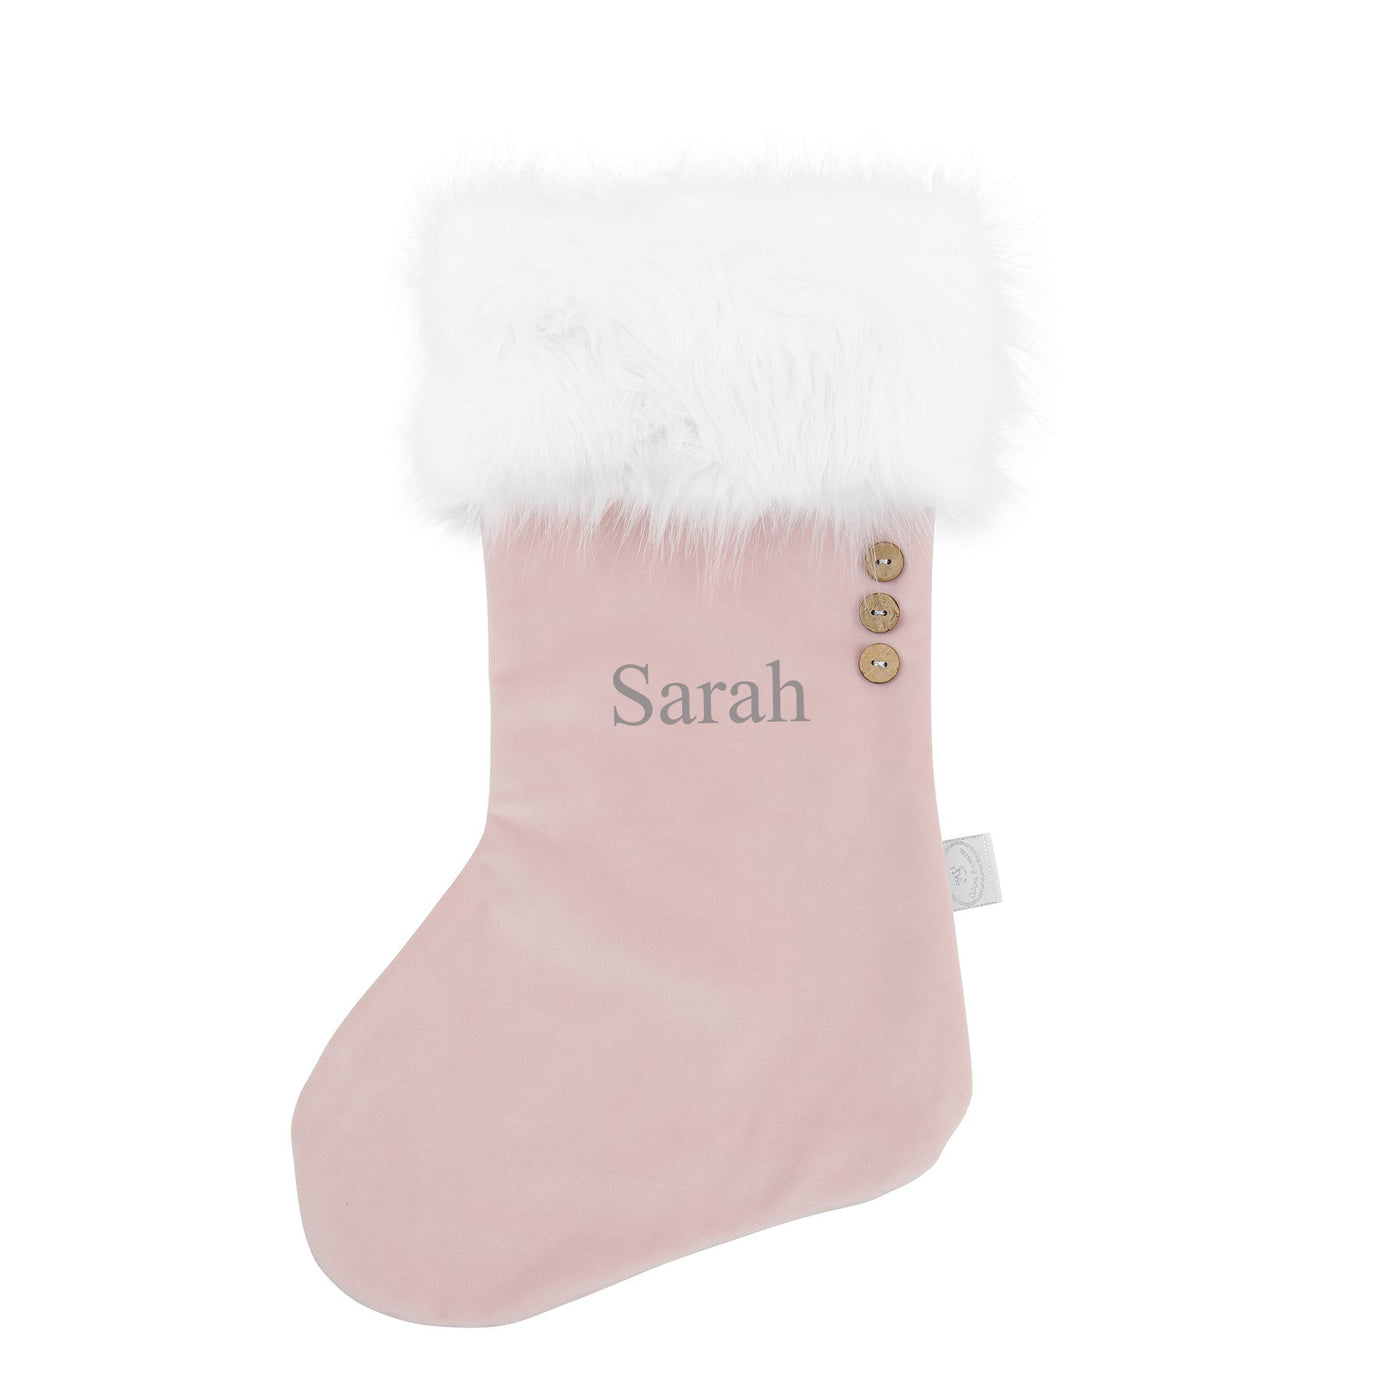 Personalised Velvet Christmas Stocking - Pink/White